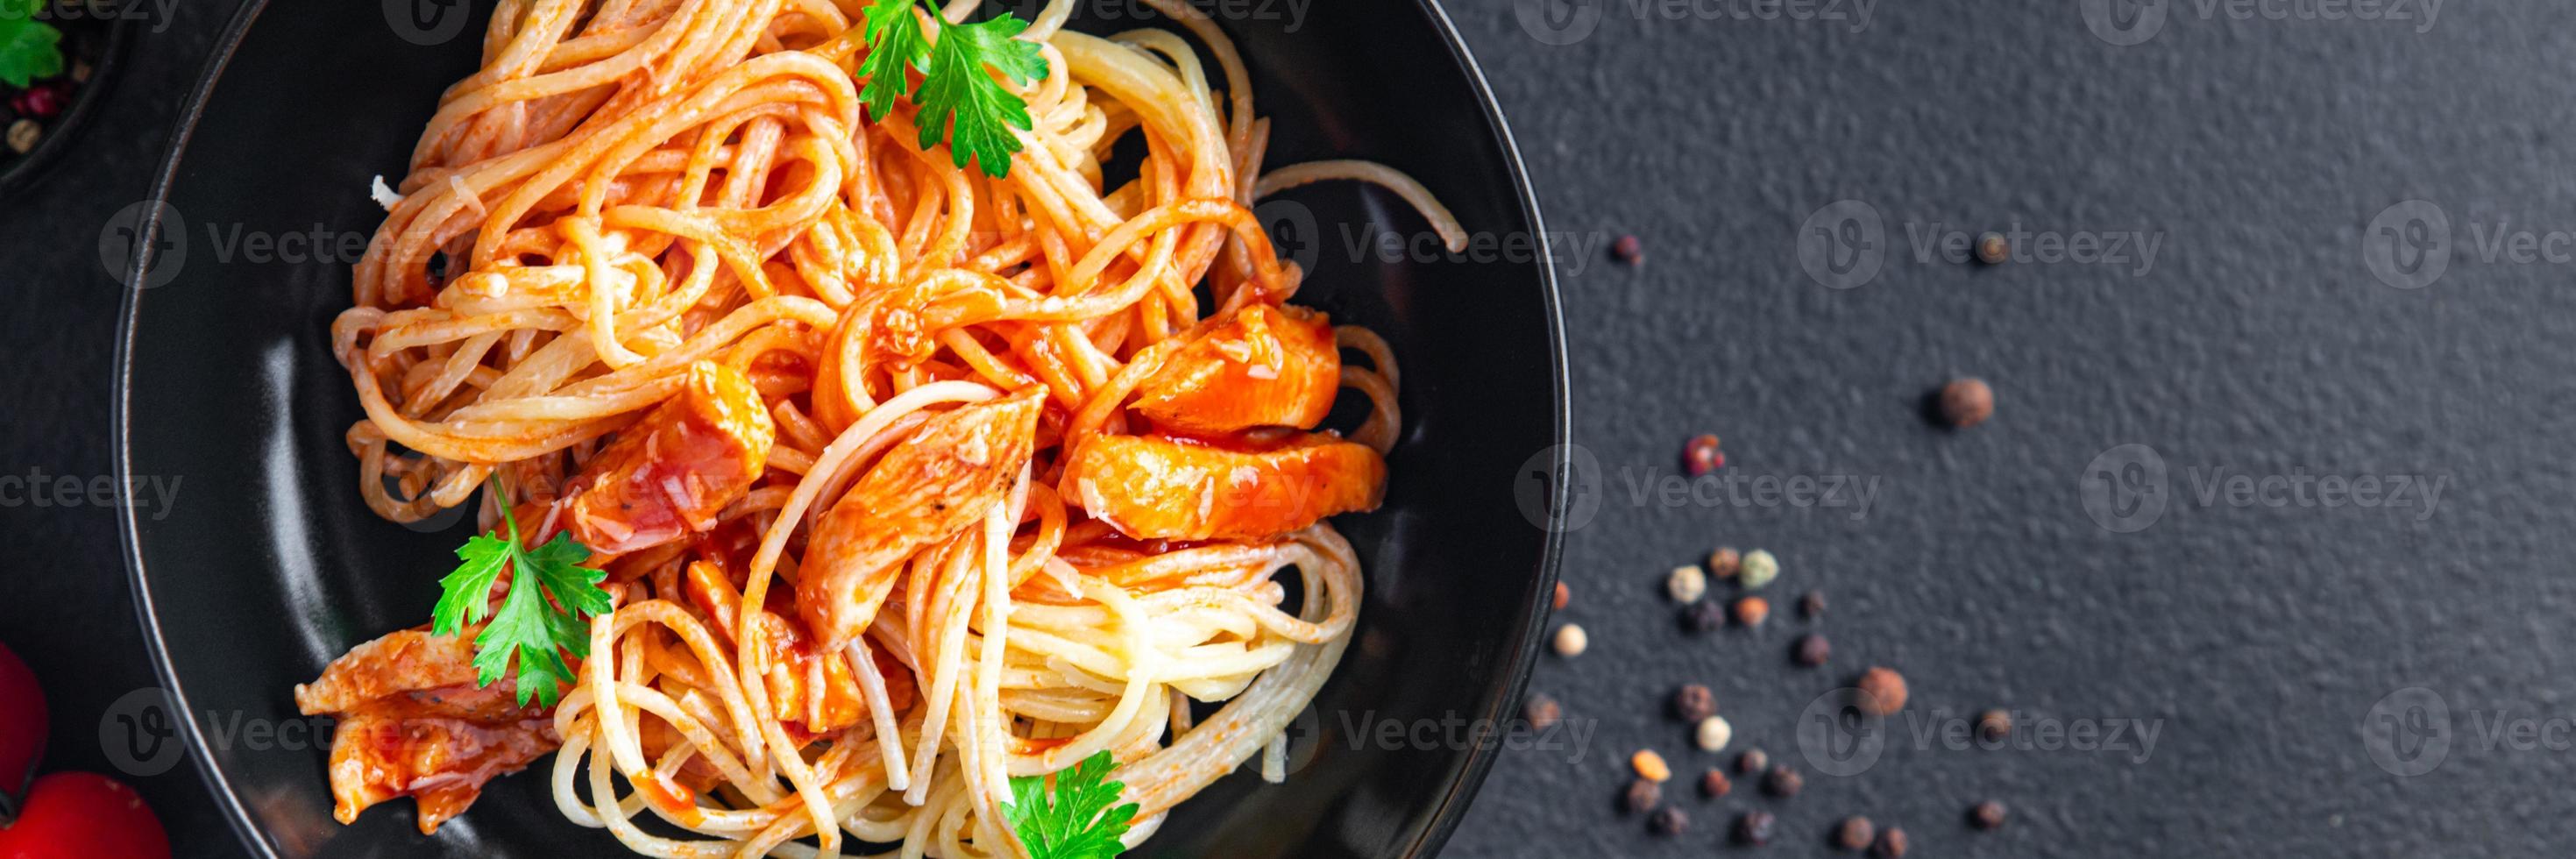 Pasta Spaghetti Tomatensauce Hühnerfleisch oder Pute gesund foto